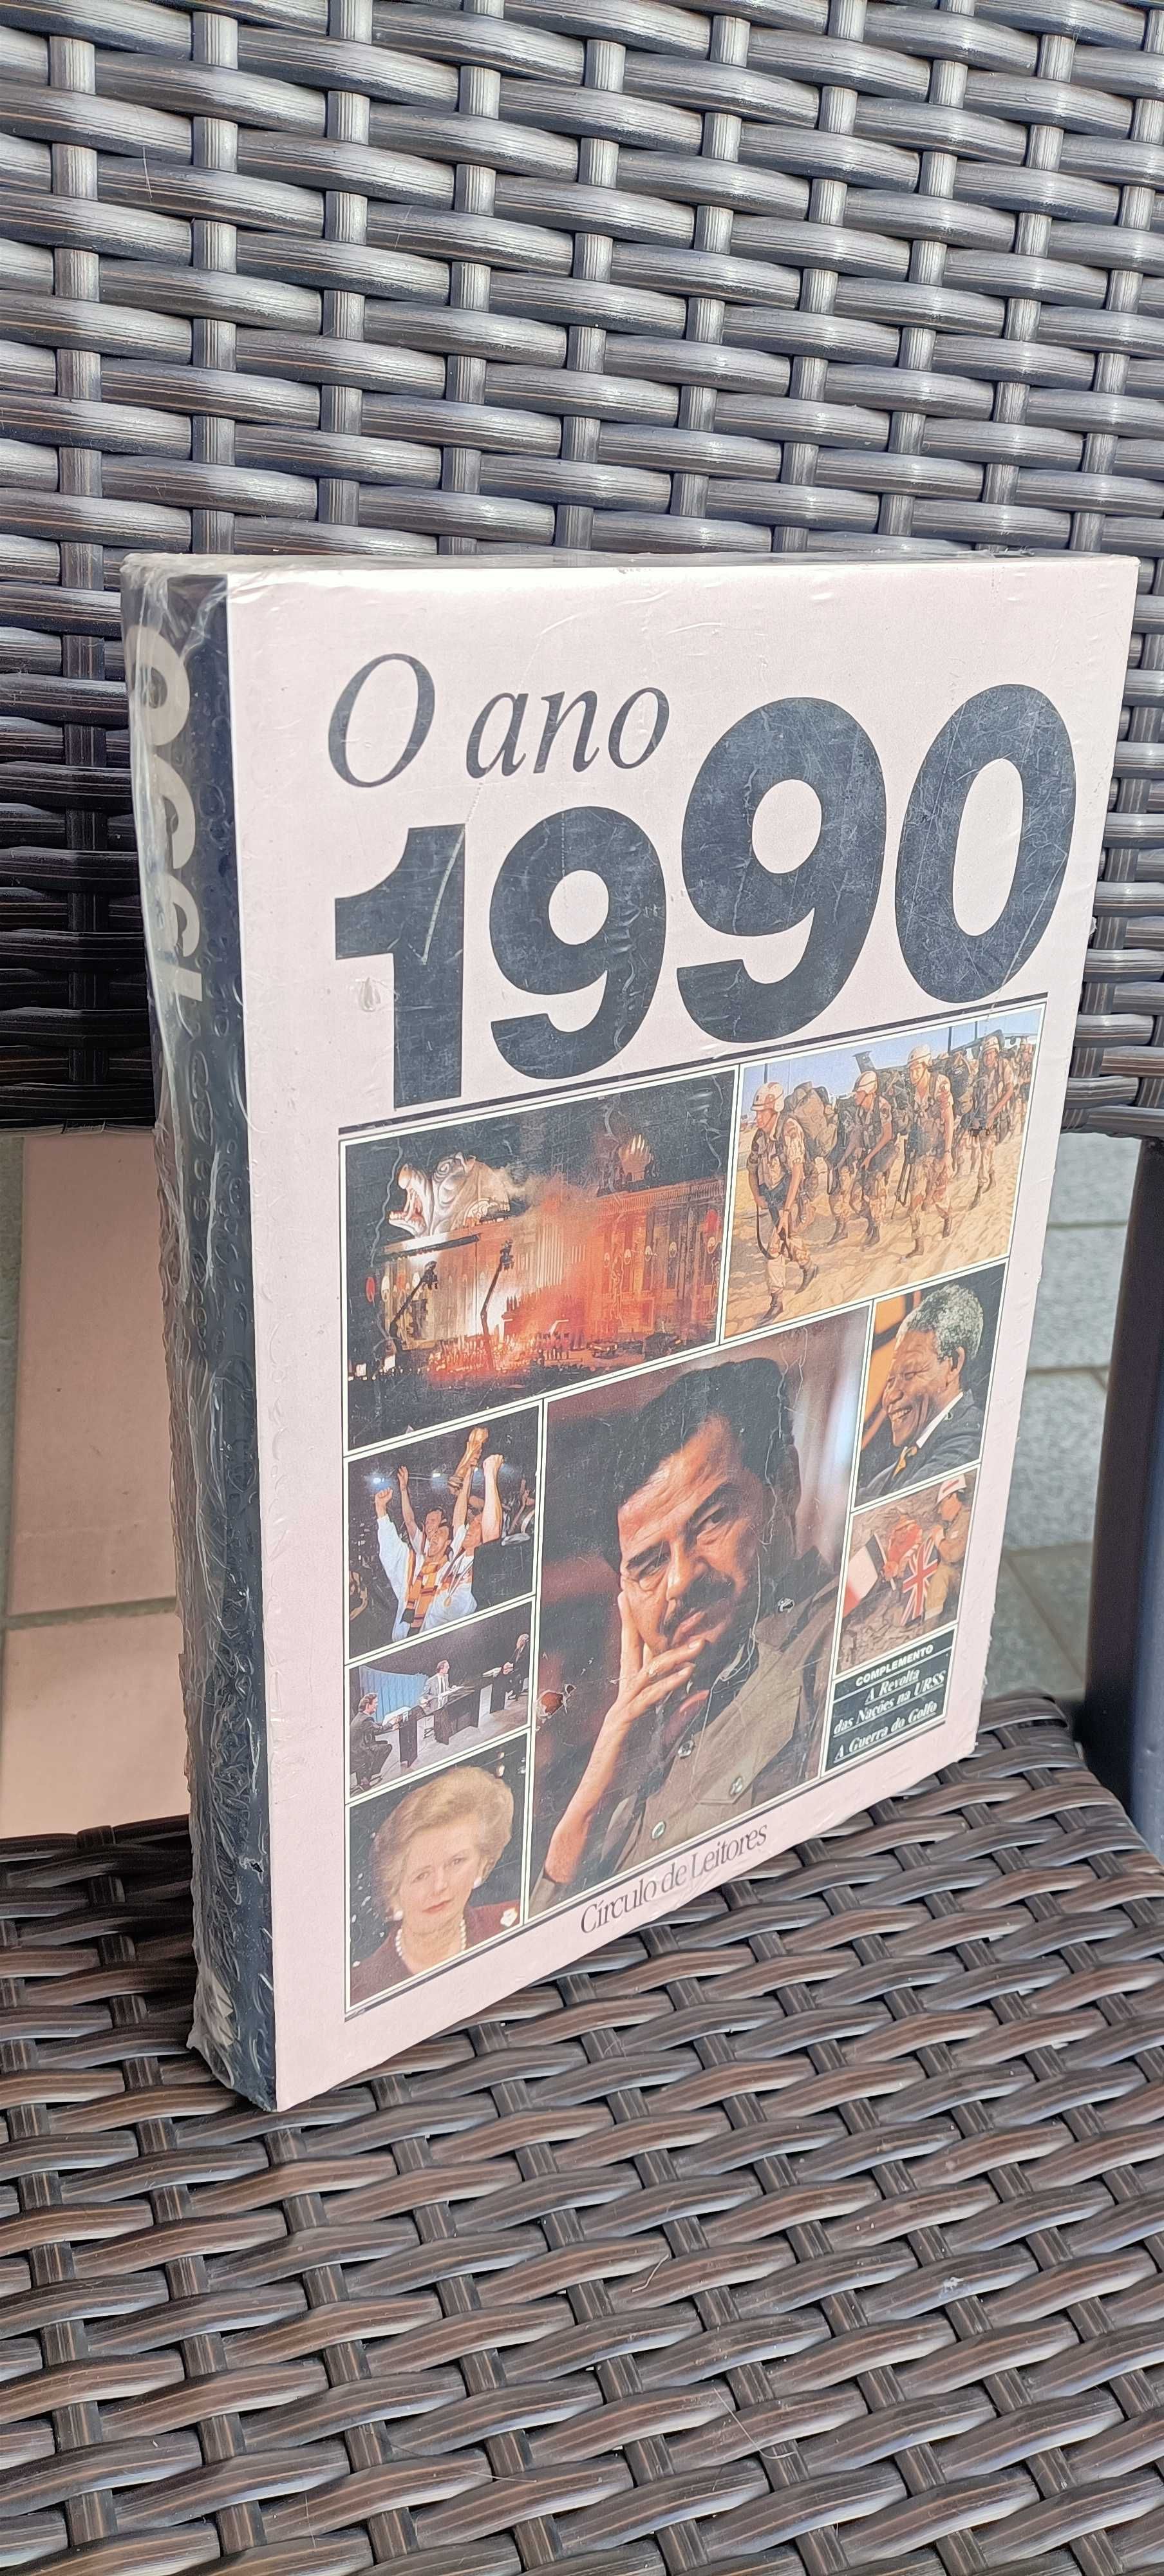 O ano 1990 - Com embalagem